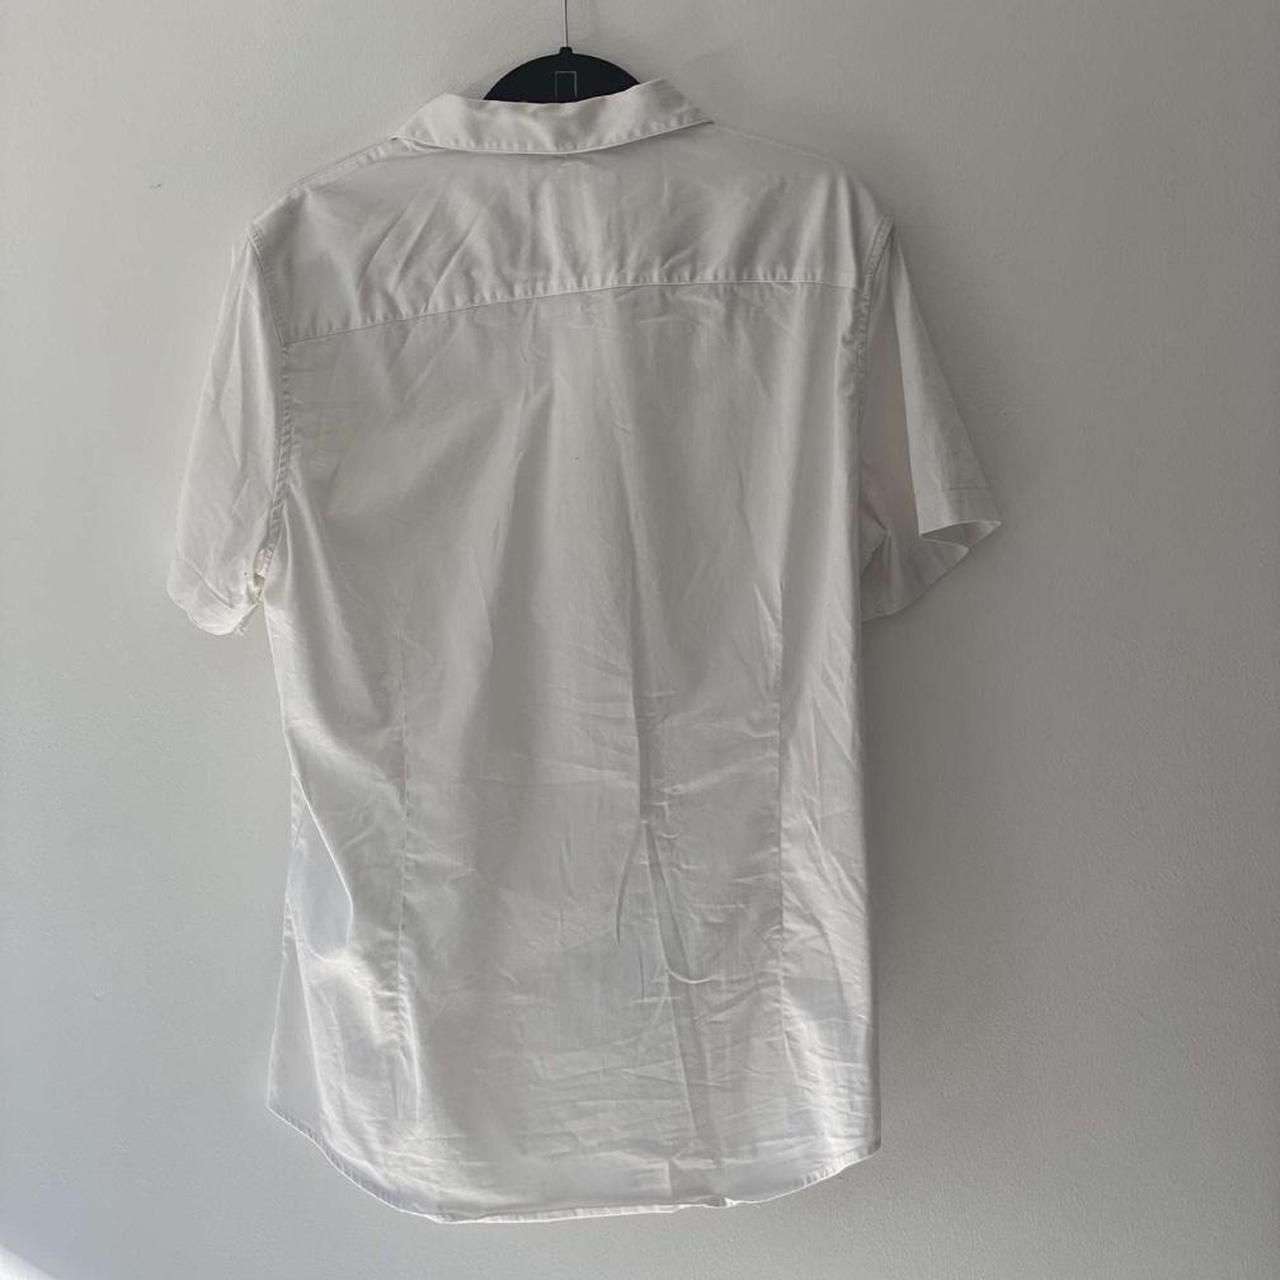 ARMANI/EXCHANGE white shirt A/X front... - Depop